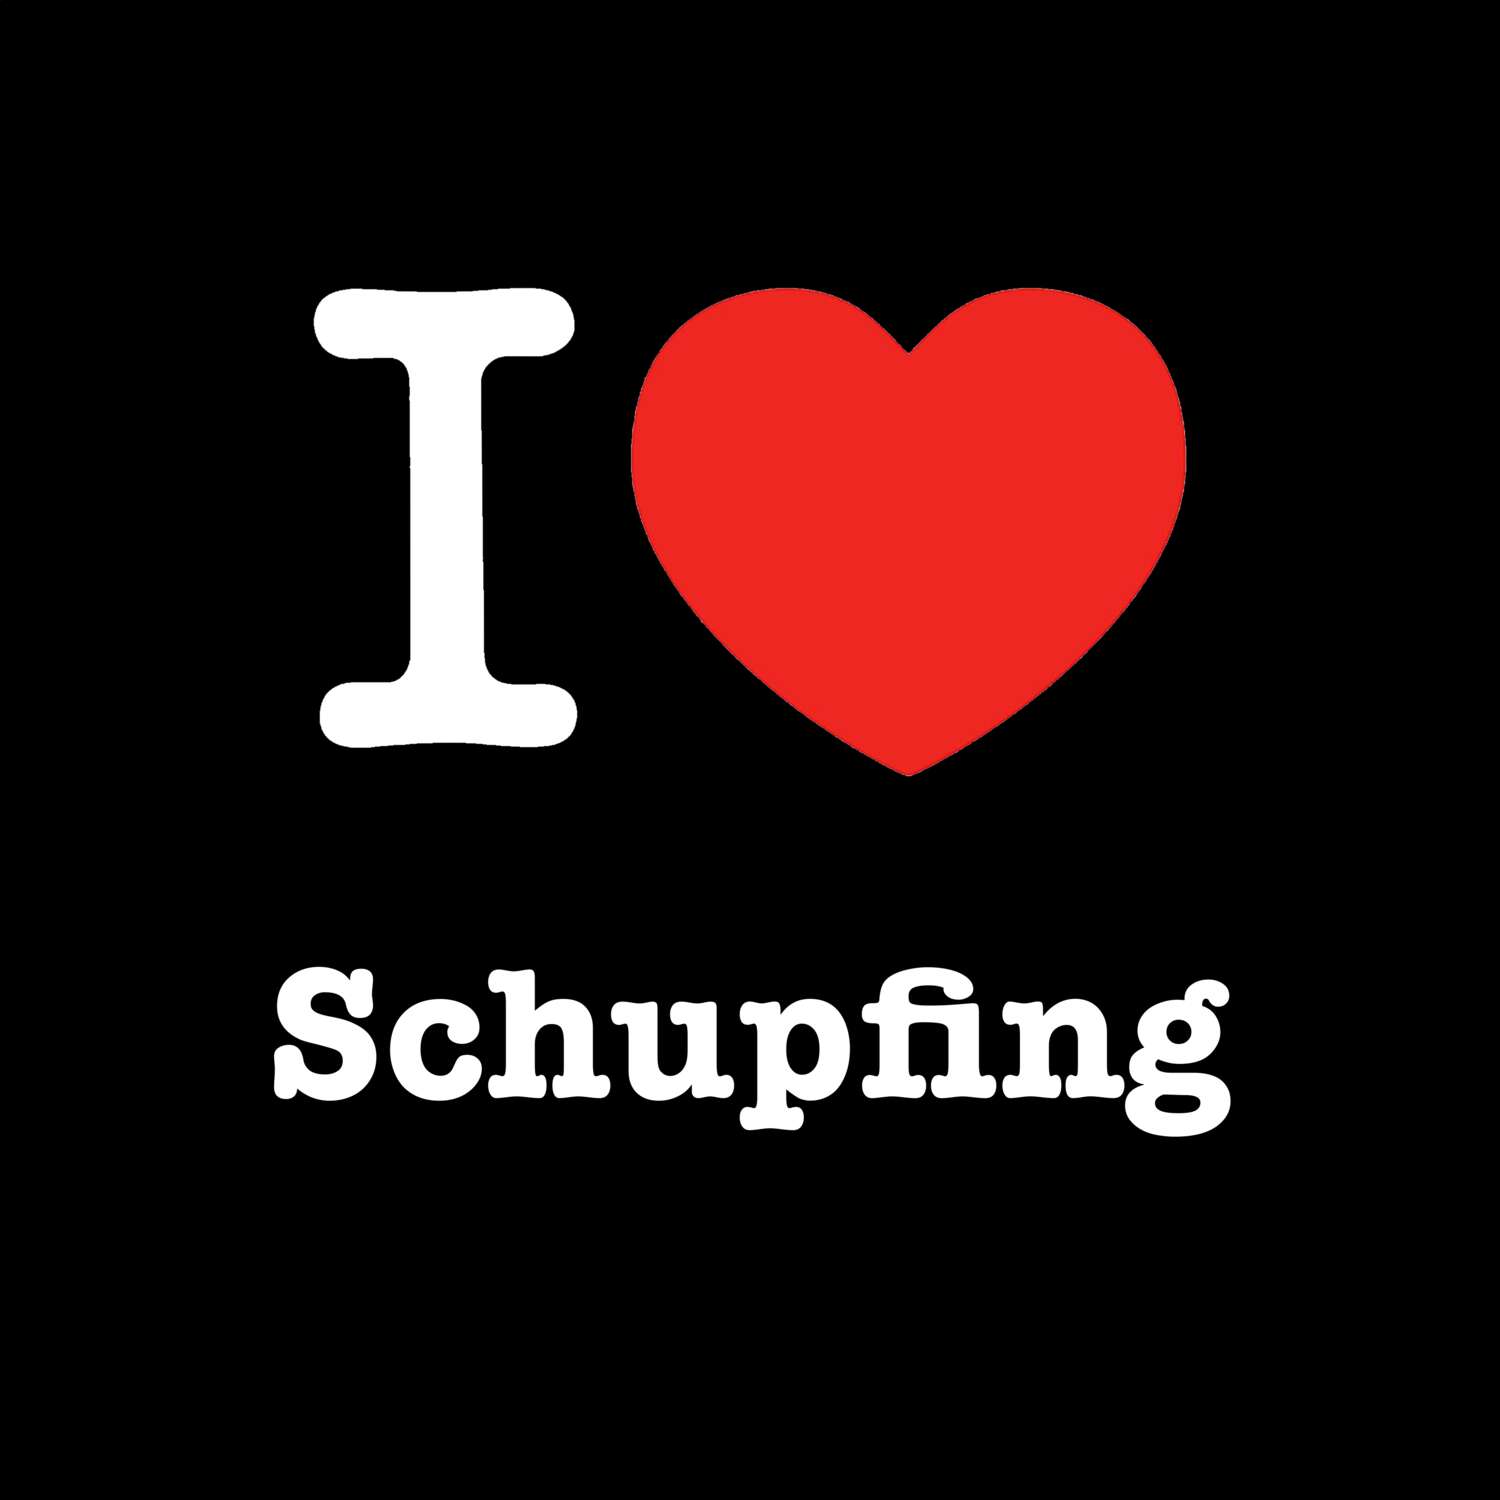 Schupfing T-Shirt »I love«